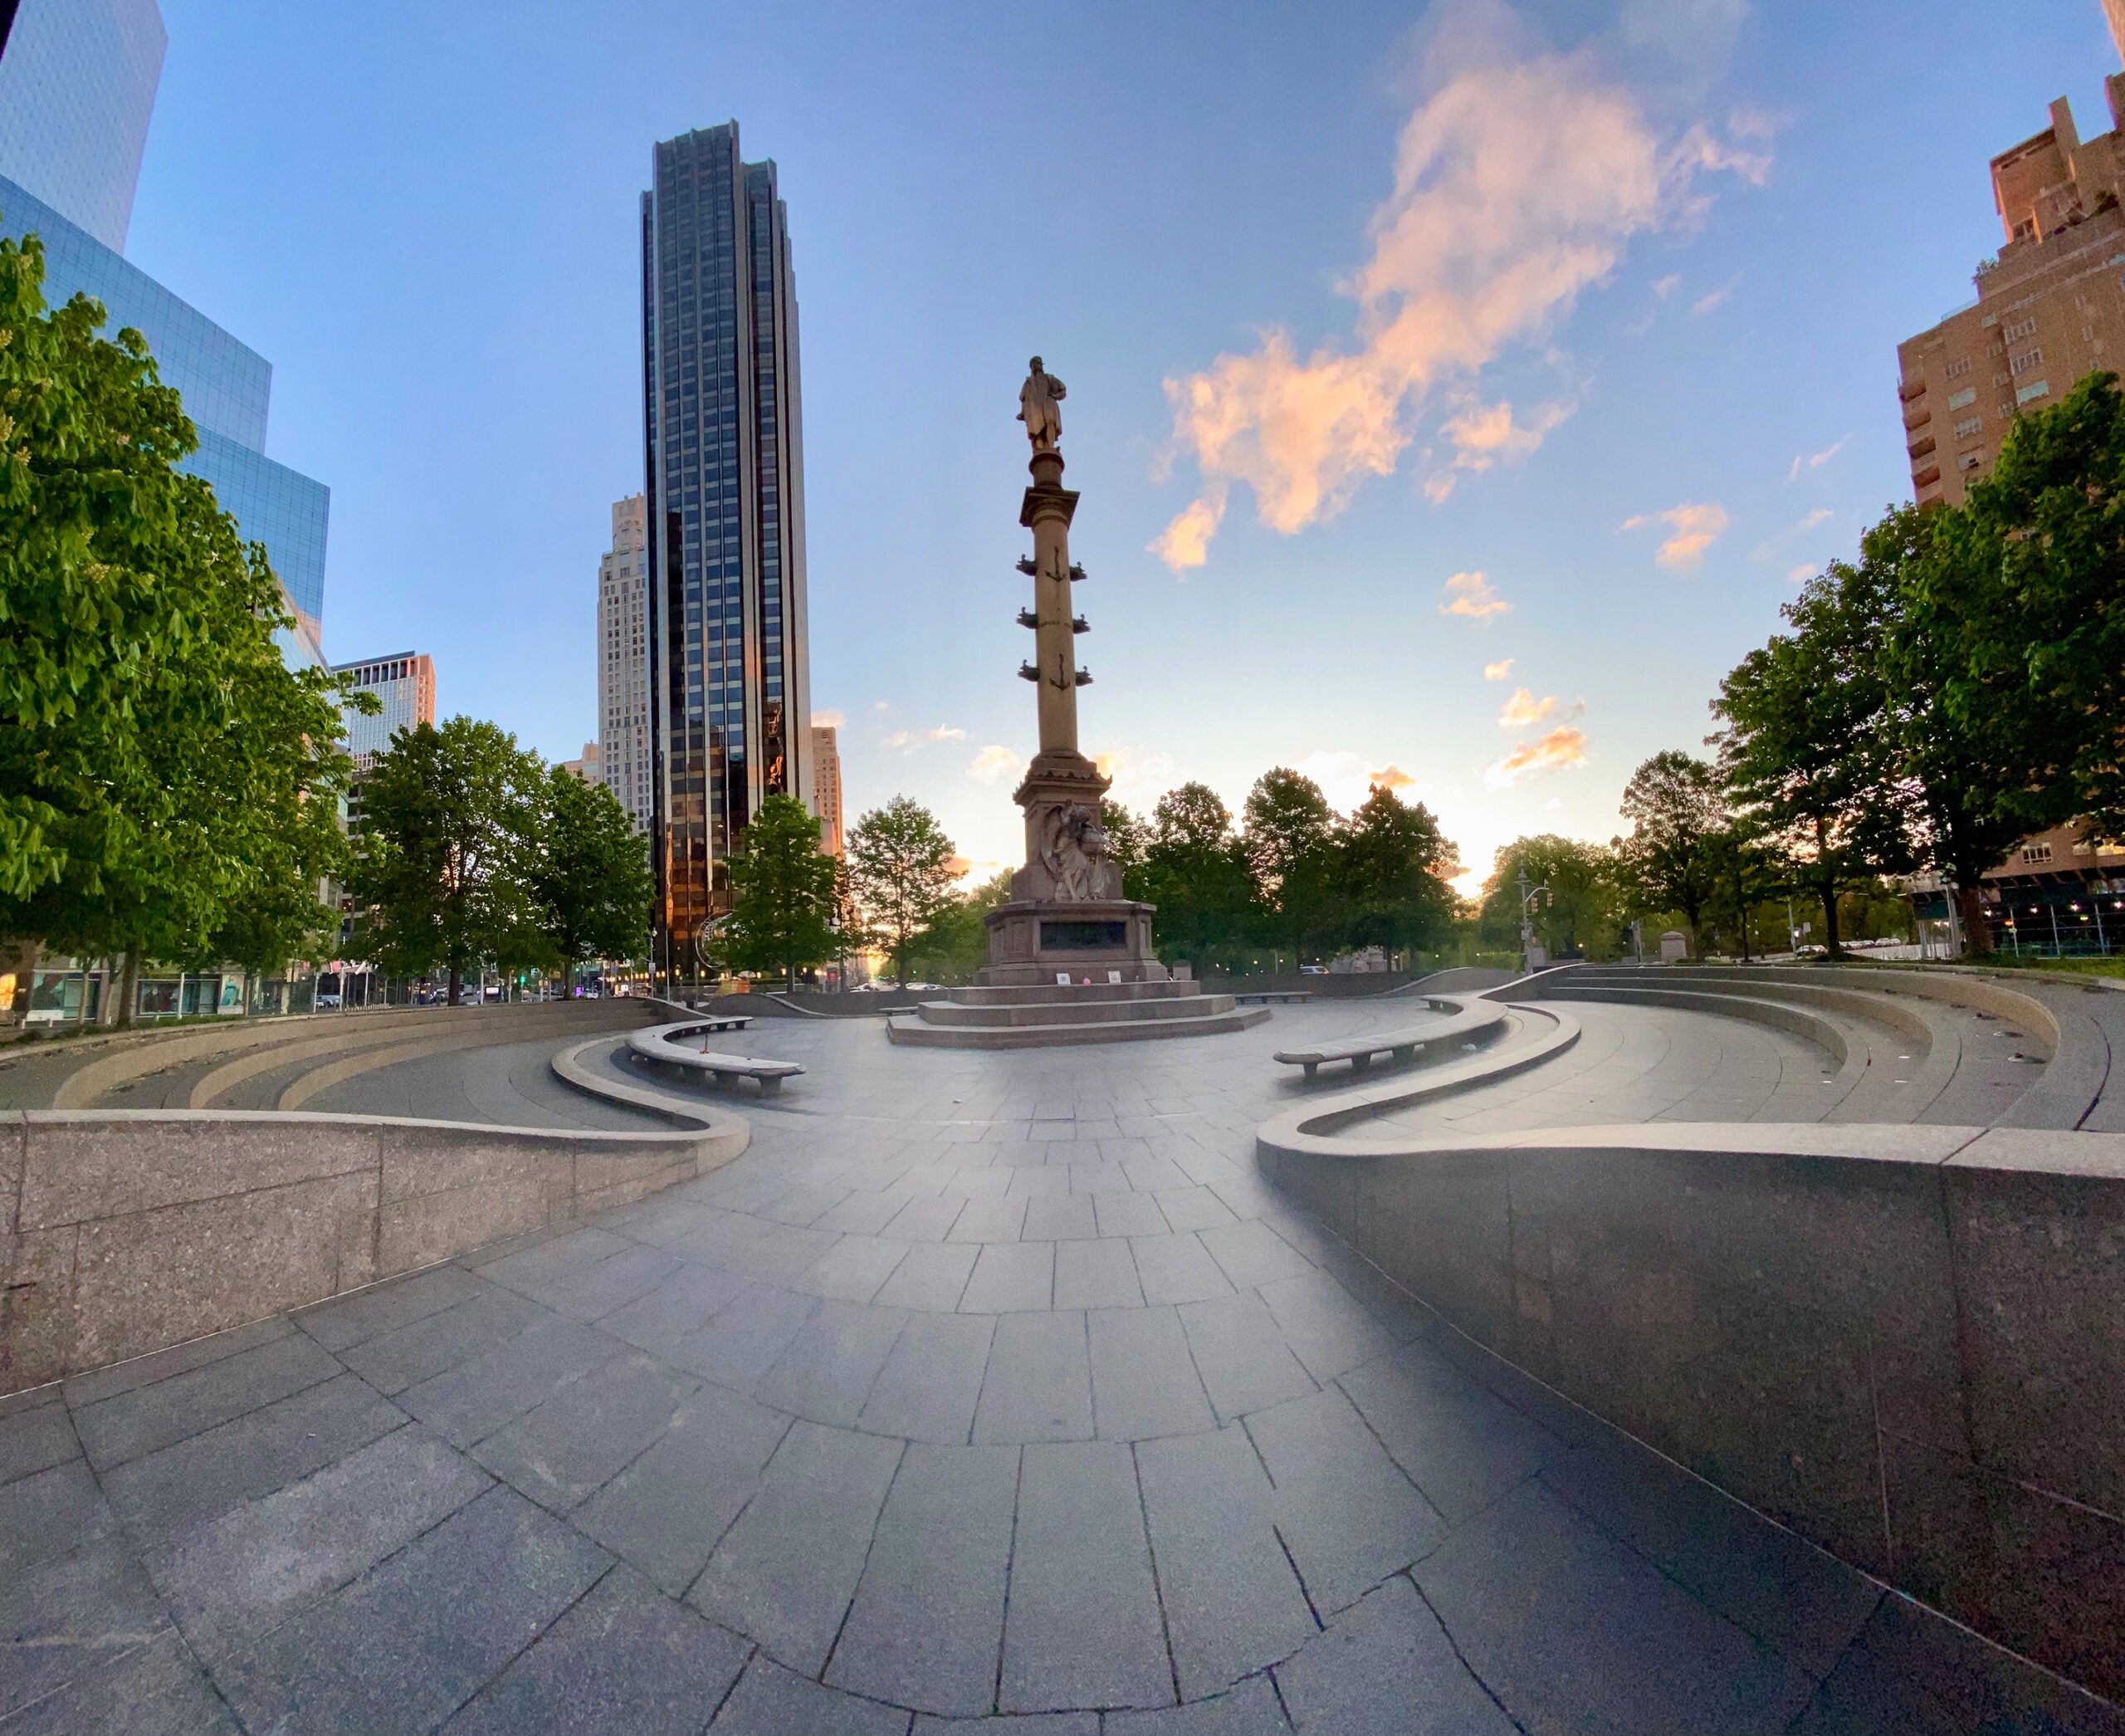 Monumento a Colombo.  09 de maio de 2020, 05h58